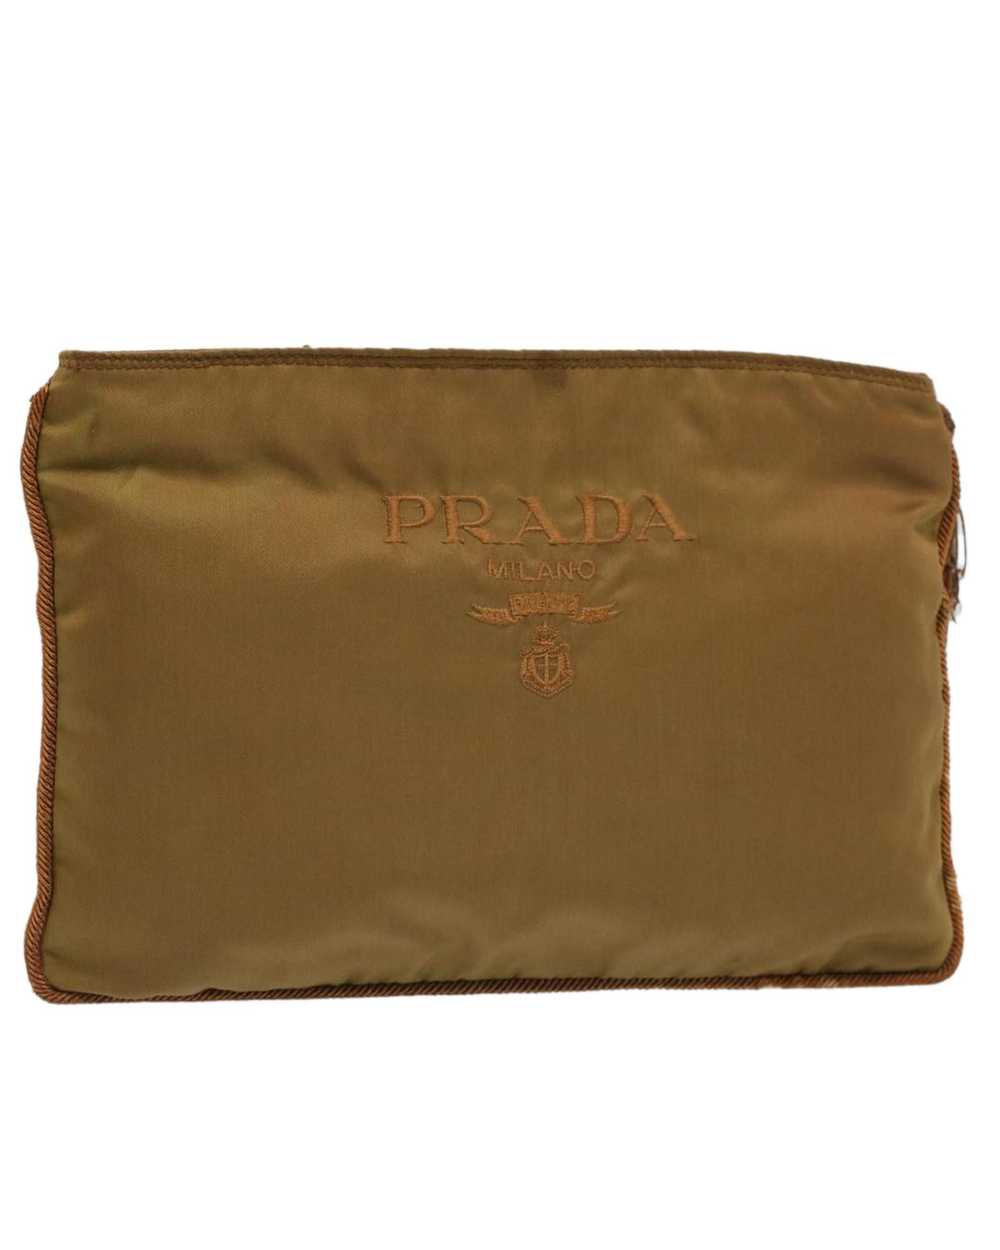 Prada Classic Khaki Nylon Pouch by Prada - image 1